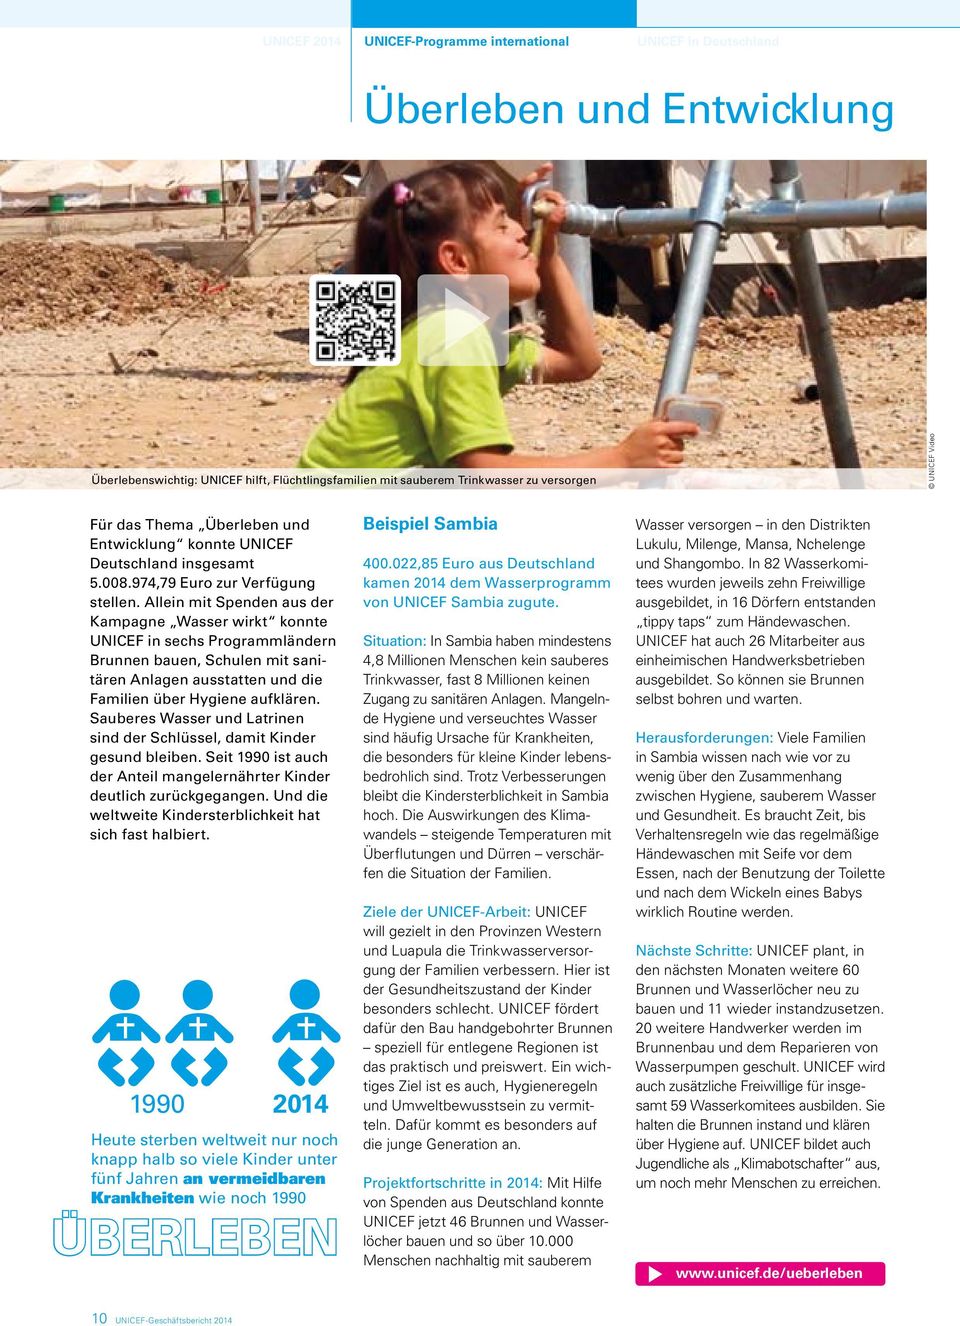 Allein mit Spenden aus der Kampagne Wasser wirkt konnte UNICEF in sechs Programmländern Brunnen bauen, Schulen mit sanitären Anlagen ausstatten und die Familien über Hygiene aufklären.